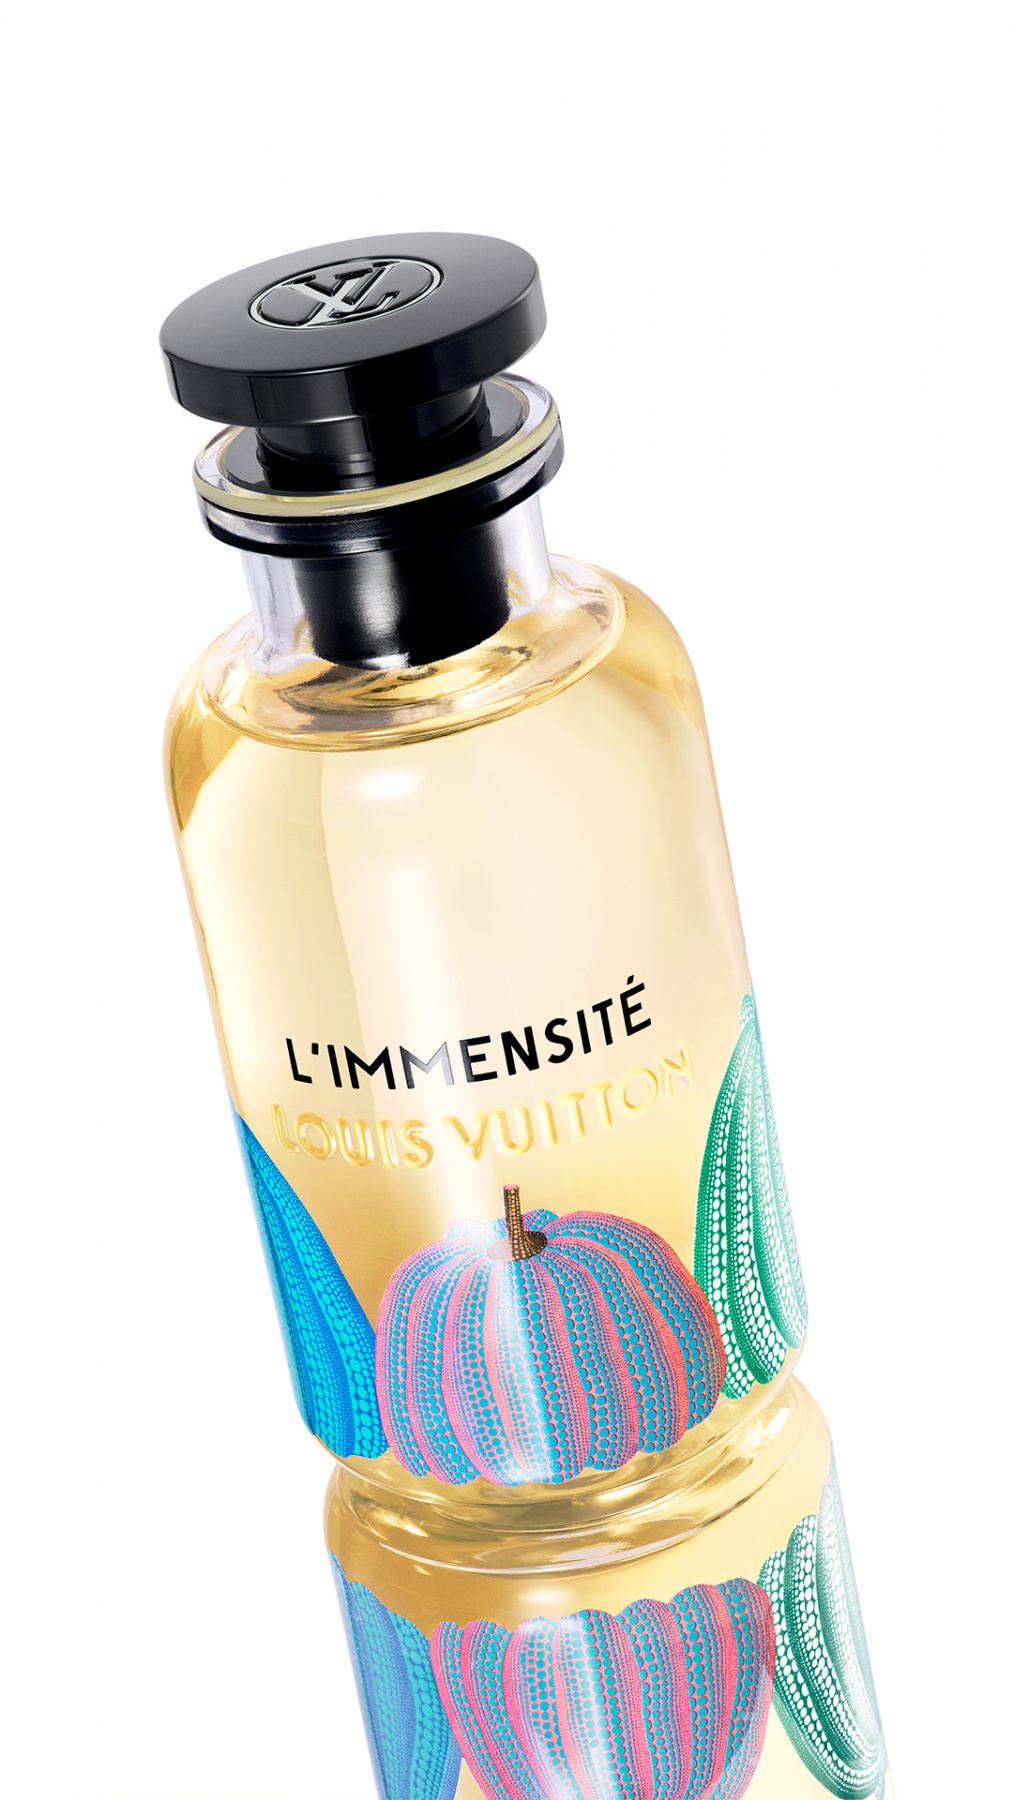 Louis Vuitton x Yayoi Kusama Spell on You Eau de Parfum (100ml)